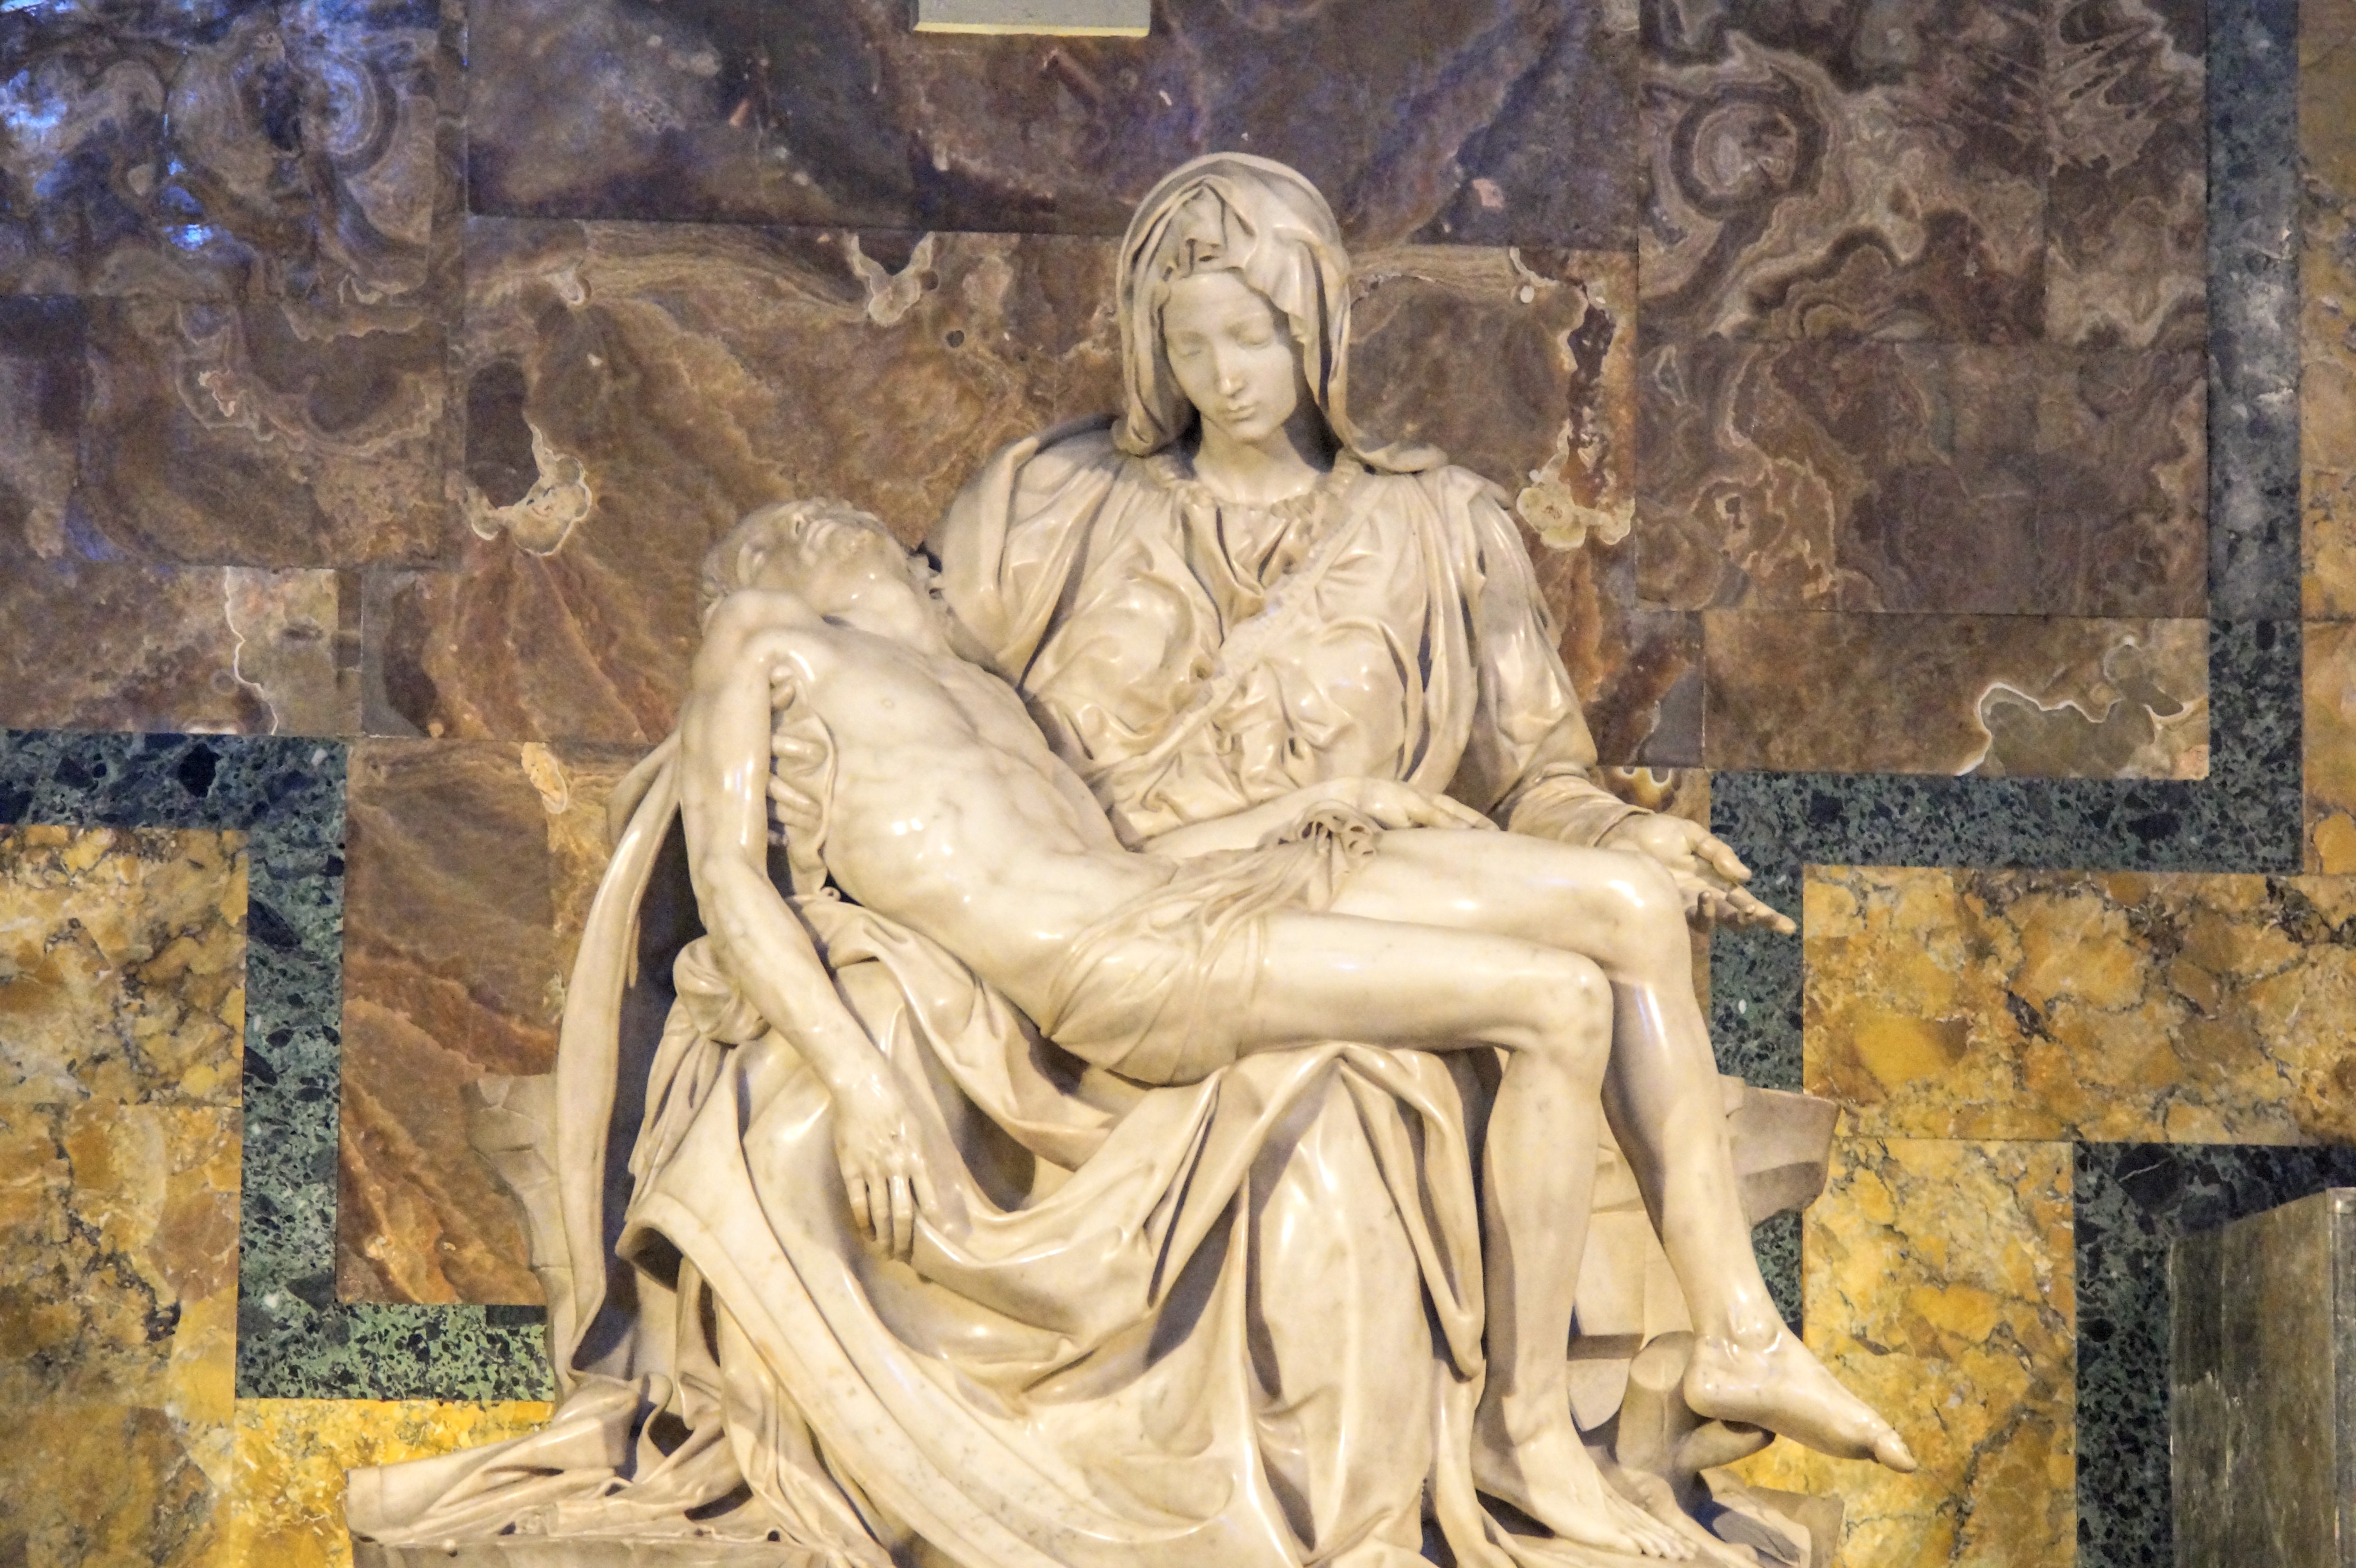 Η διάσημη Pietà ("Αποκαθήλωση") του Μιχαήλ Άγγελου (Φωτογραφία Νίκος Πράσσος)